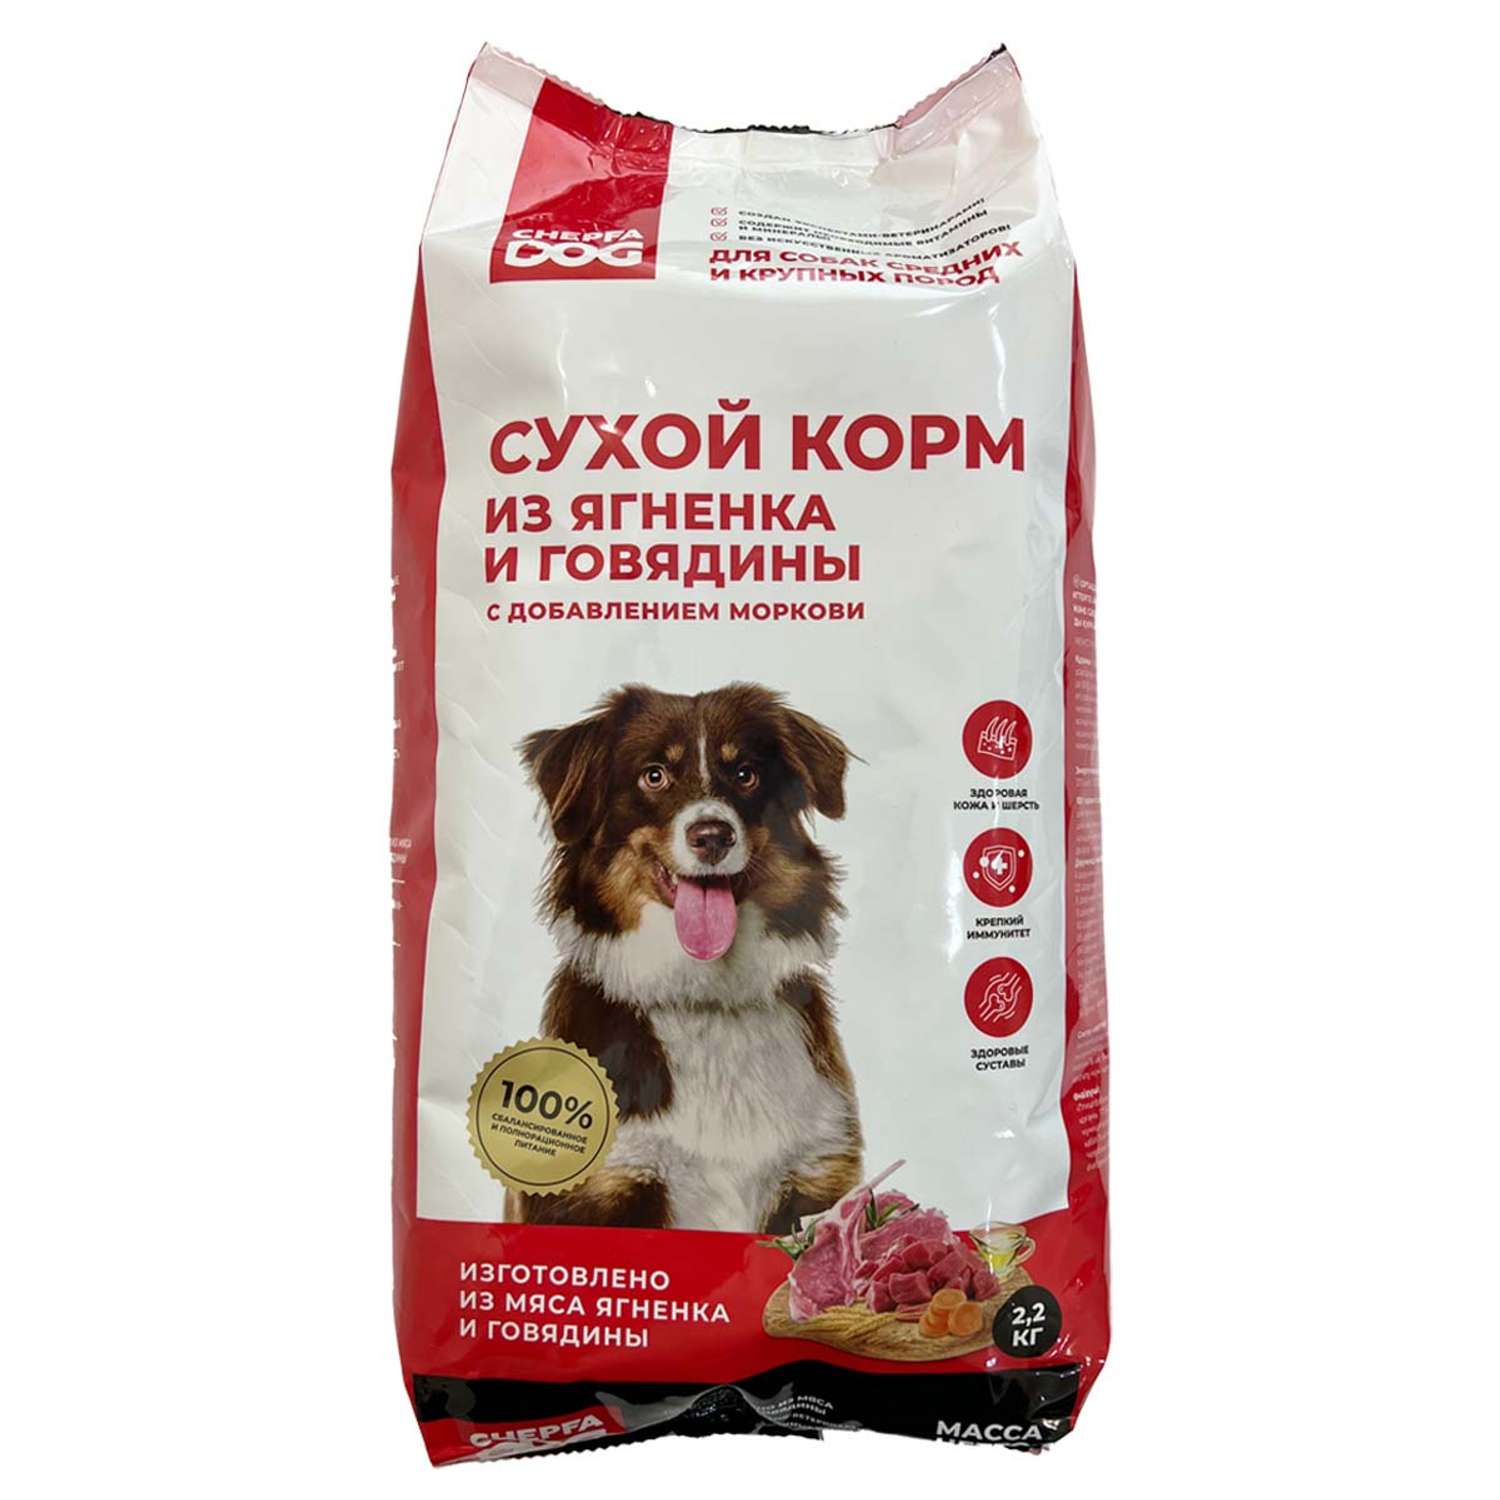 Сухой корм для собак Chepfa Dog Полнорационный ягненок и говядина 2.2 кг для взрослых собак средних и крупных пород - фото 1